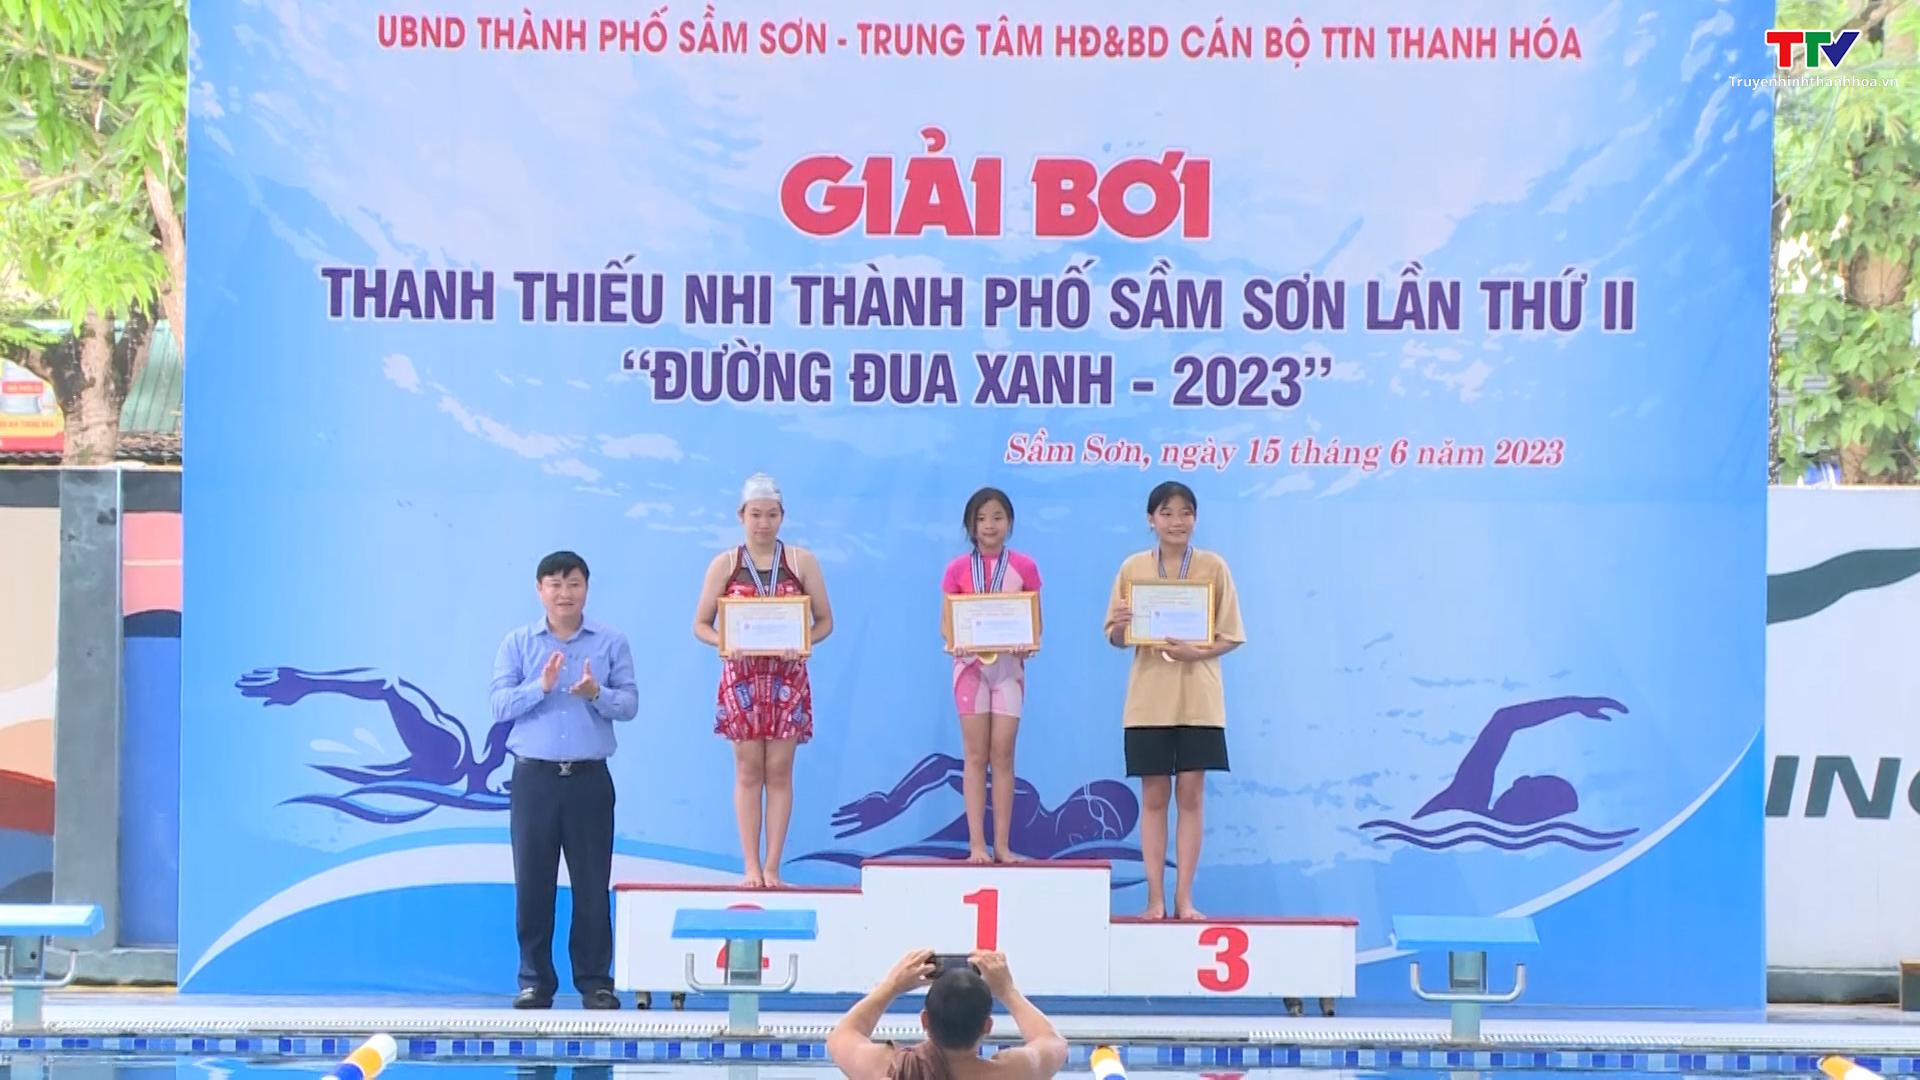 Giải bơi thanh thiếu nhi thành phố Sầm Sơn lần thứ II – Đường đua xanh năm 2023 - Ảnh 3.